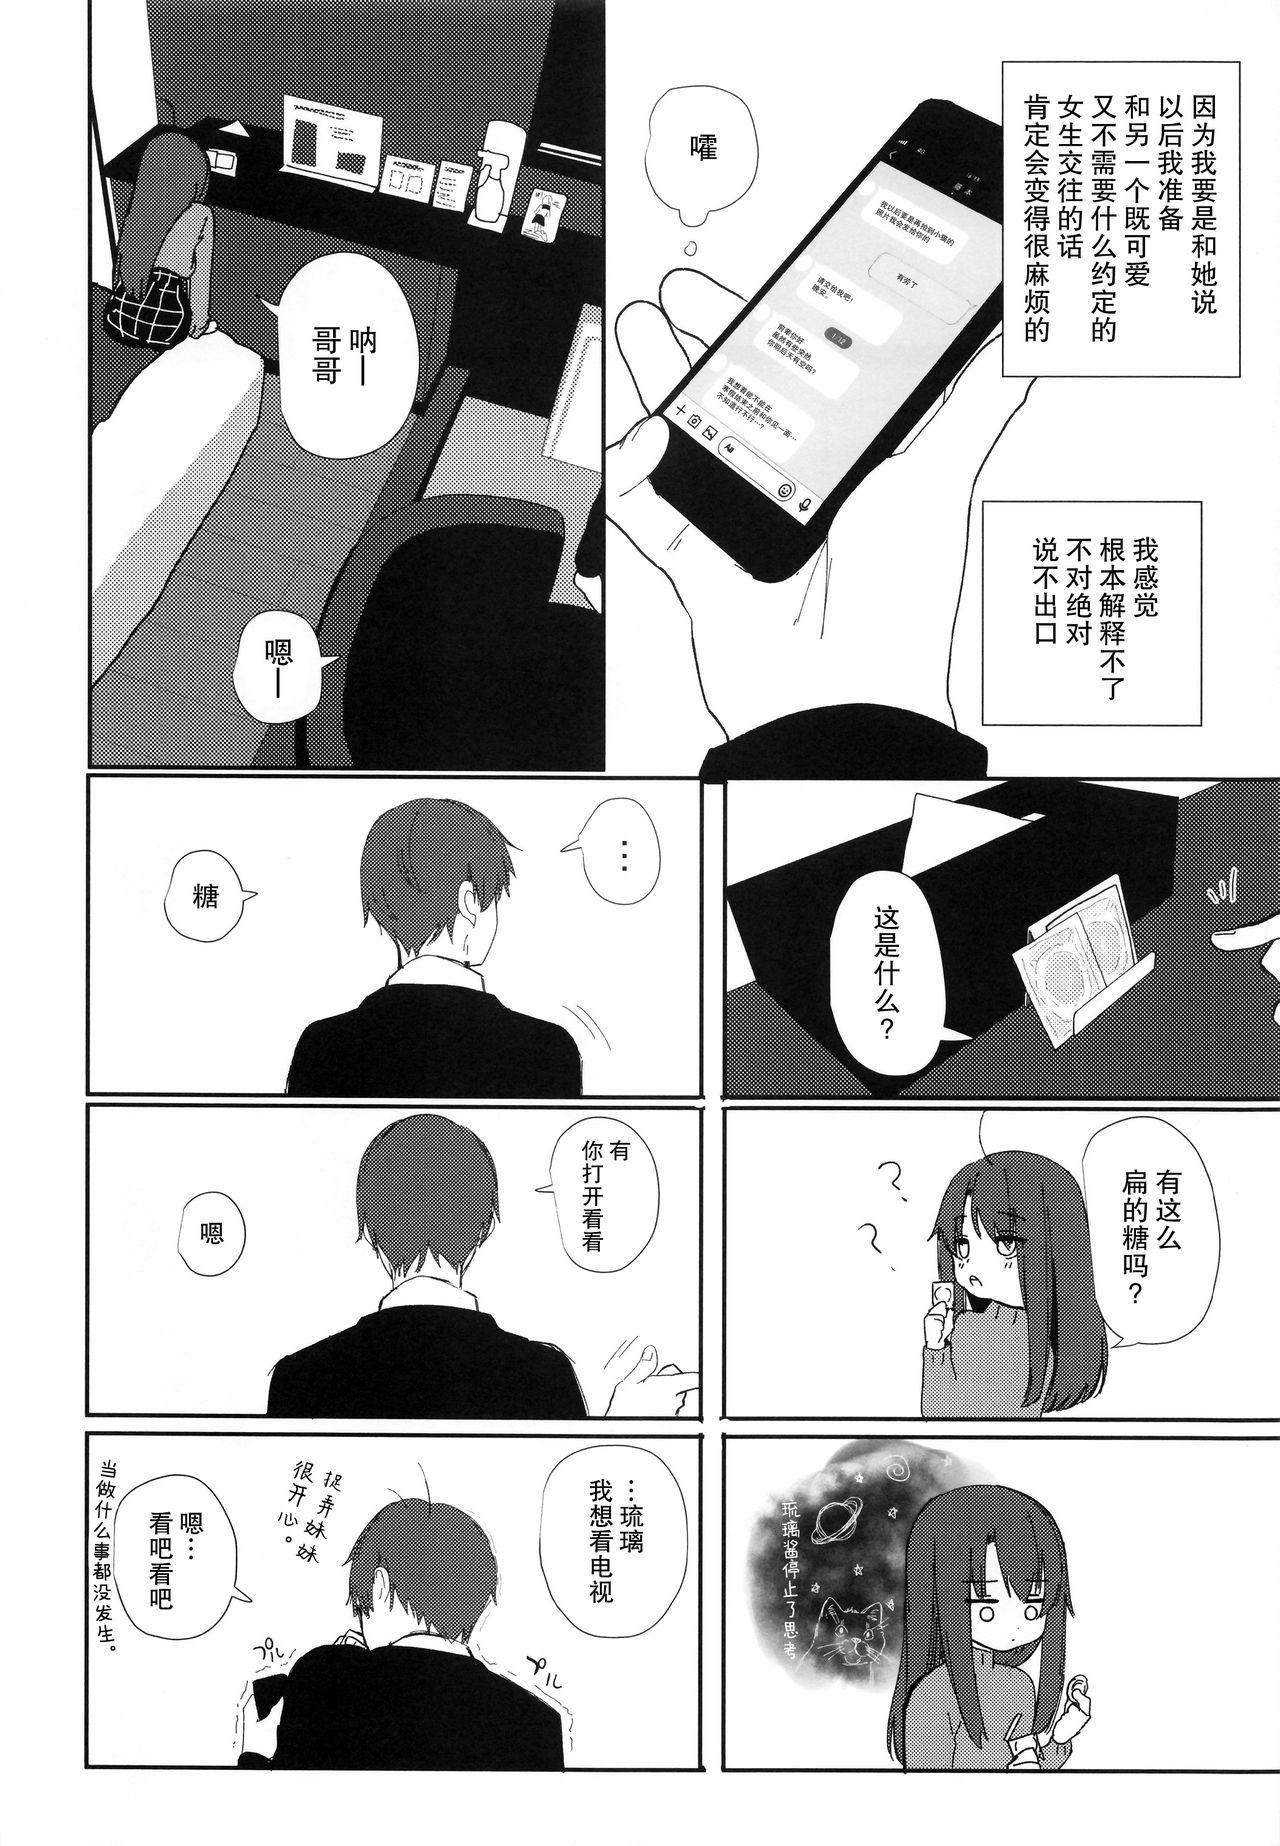 Bizarre Nitamonodoosi 4 Kyoudai, LoveHo e Iku. - Original Porno - Page 9